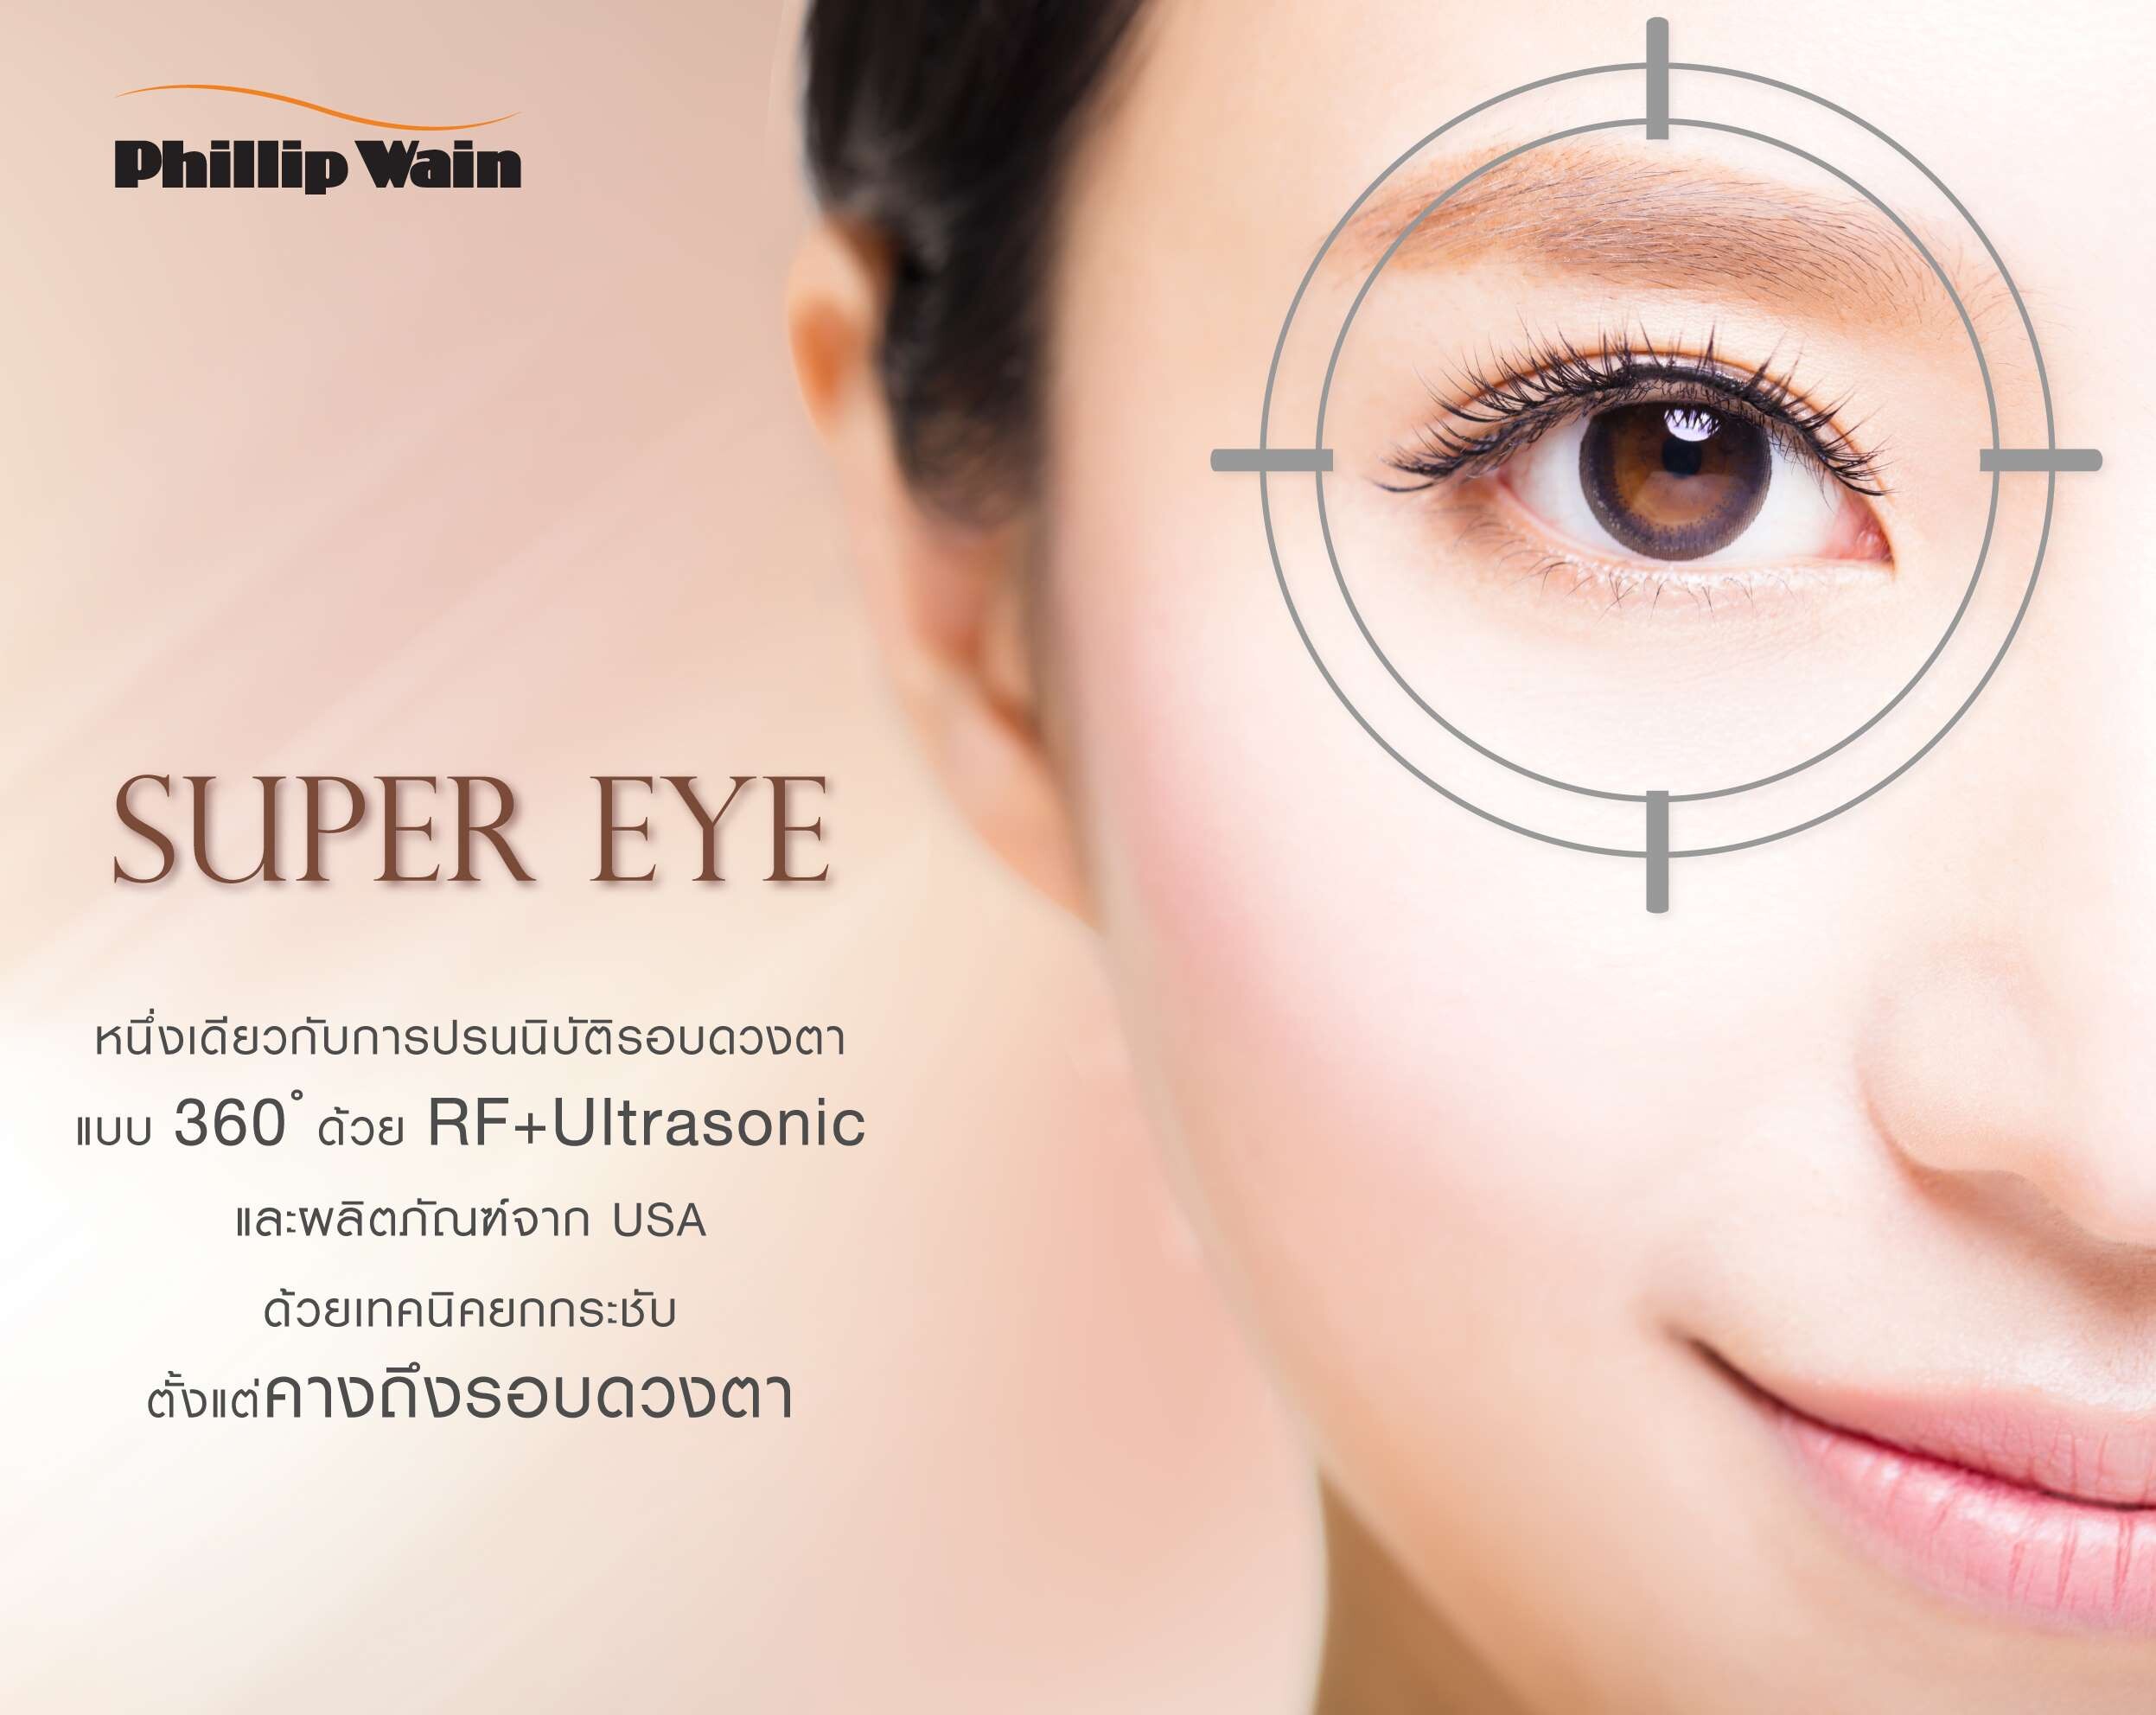 ฟิลิป เวน เปิดตัว "Super Eye" หนึ่งเดียวกับการปรนนิบัติยกกระชับรอบดวงตา แบบ 360 ? ด้วย RF+Ultrasonic และผลิตภัณฑ์จาก USA